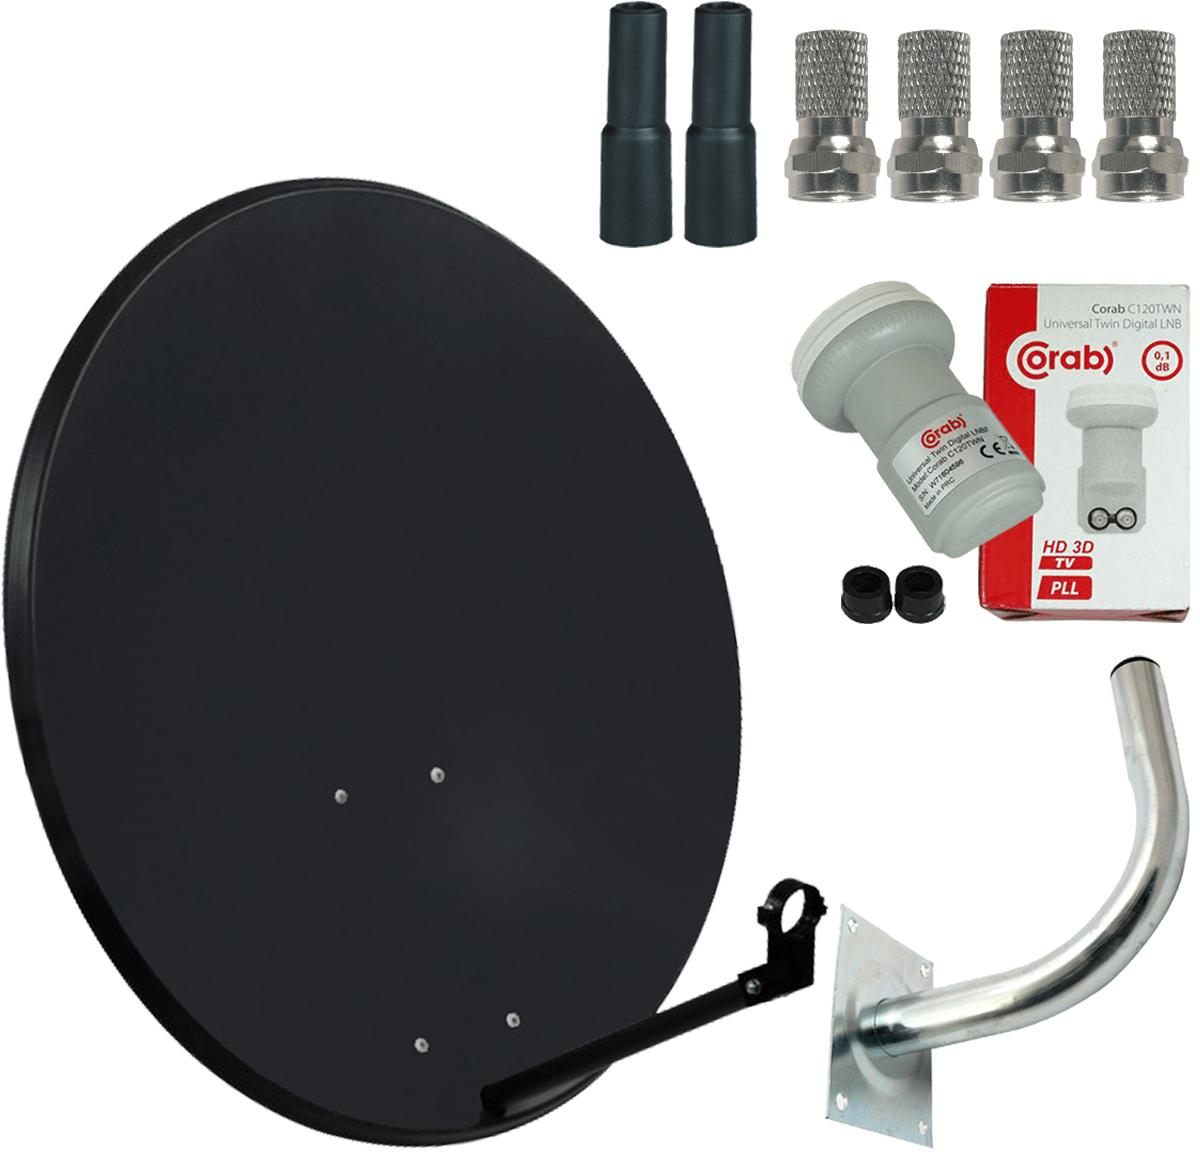 Zestaw TV SAT antena (80 cm) + konwerter Twin + uchwyt antenowy + wtyki i osłony - najważniejsze cechy: